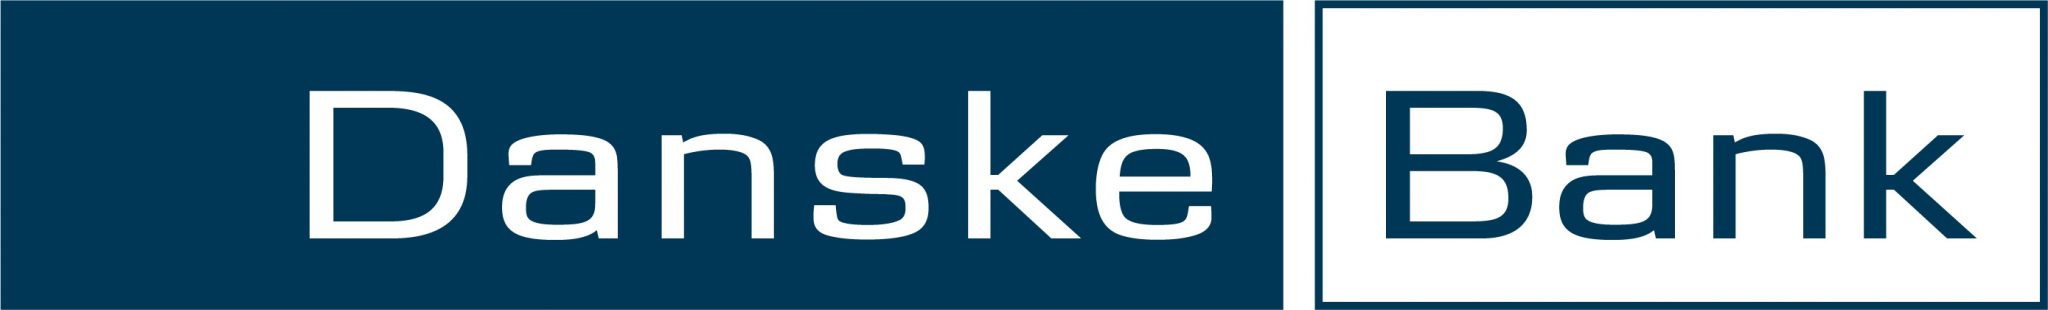 DanskeBank Logo Integrert Med Xledger